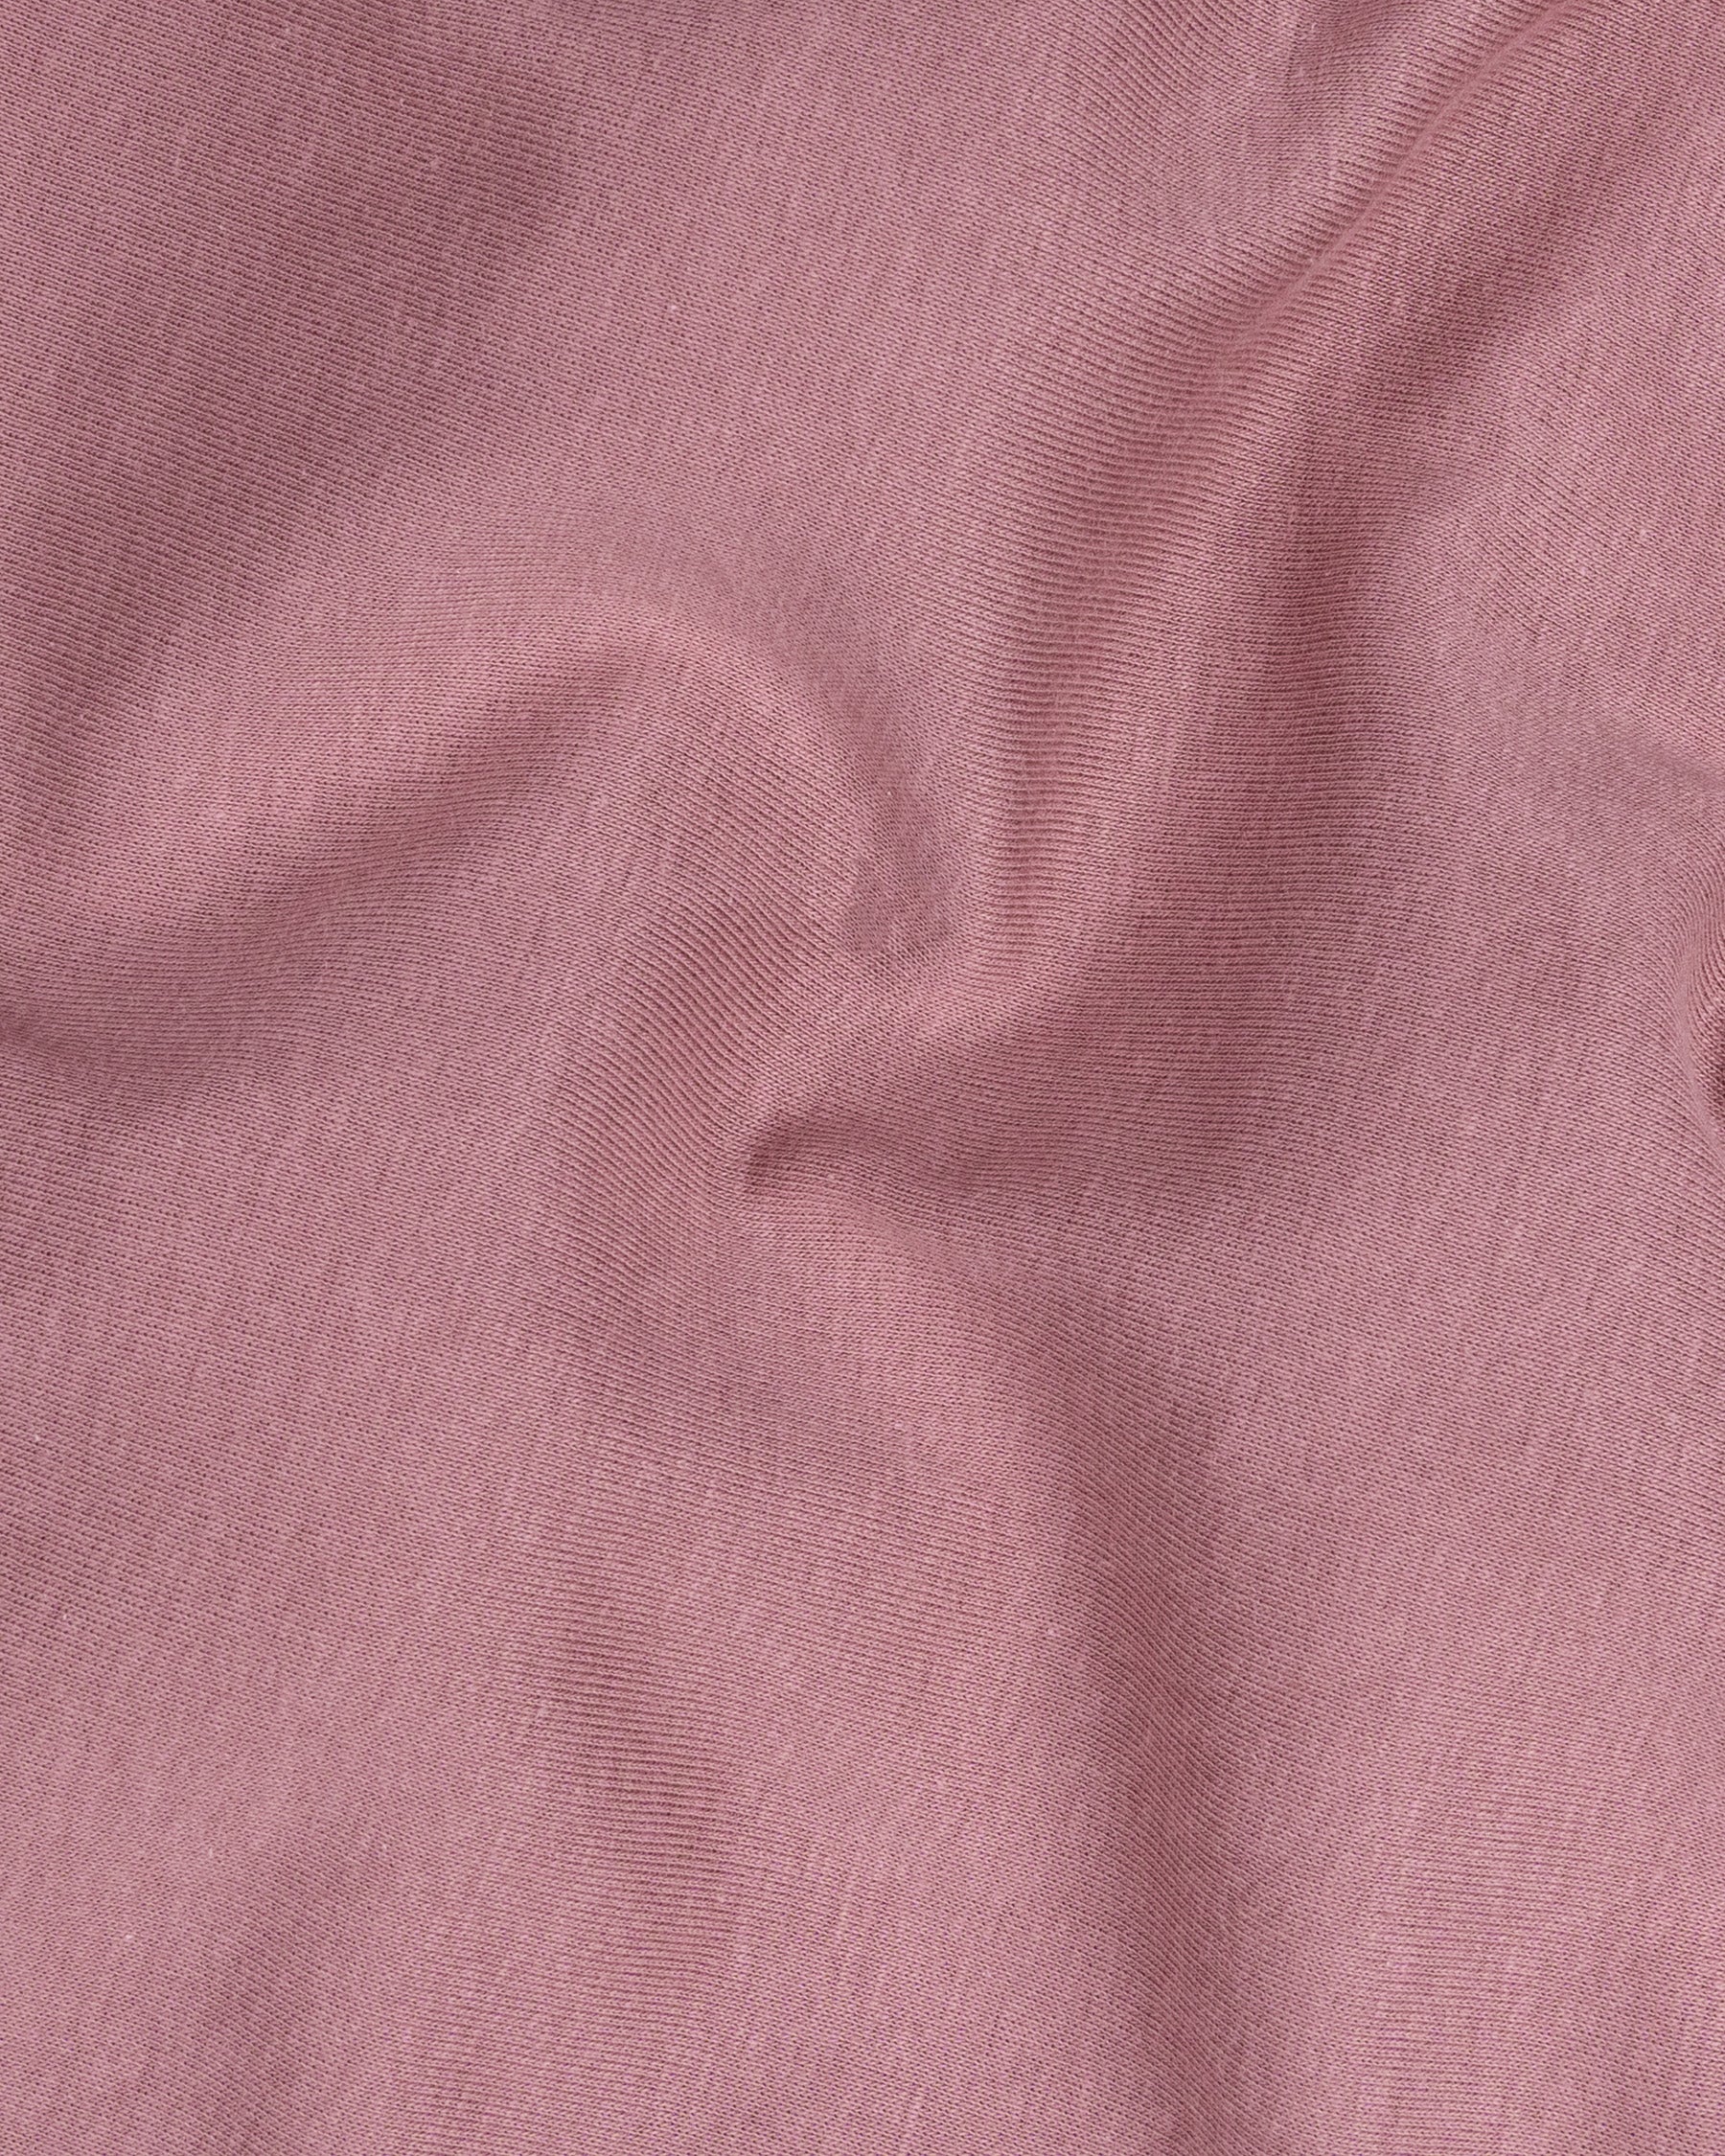 Turkish Rose Full Sleeve Premium Cotton Jersey Sweatshirt TS464-S, TS464-M, TS464-L, TS464-XL, TS464-XXL